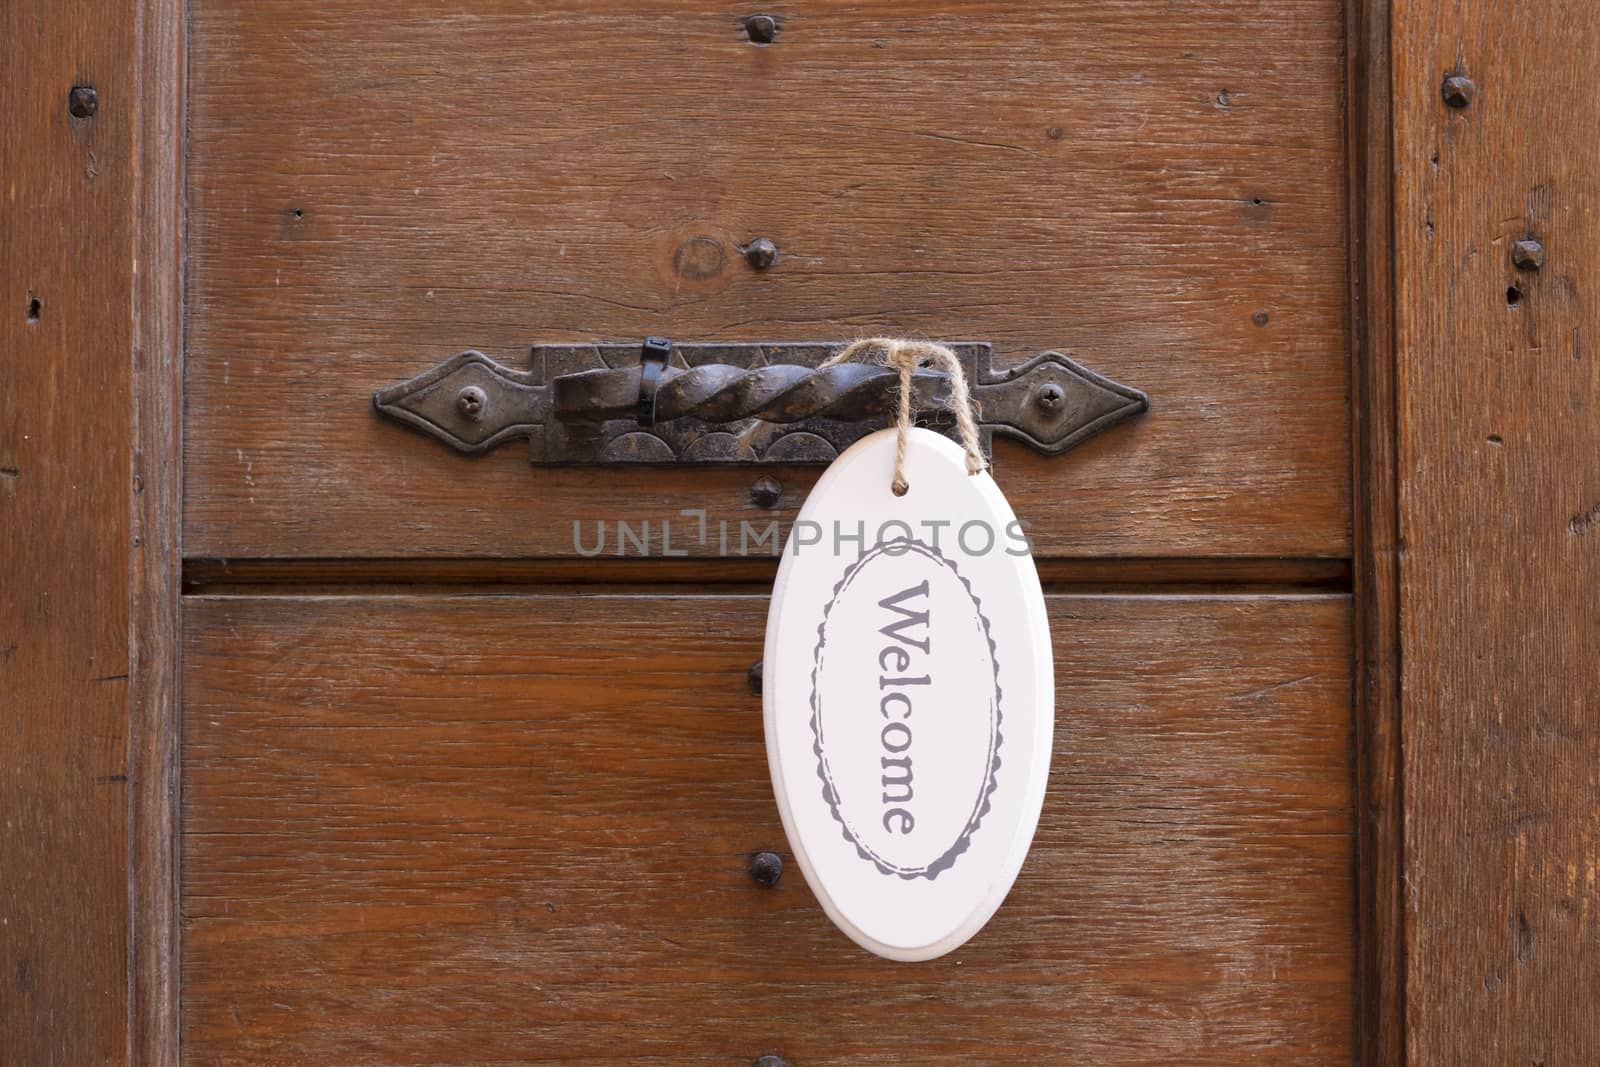 Antique door handle on a wooden door wit a welcome sign.